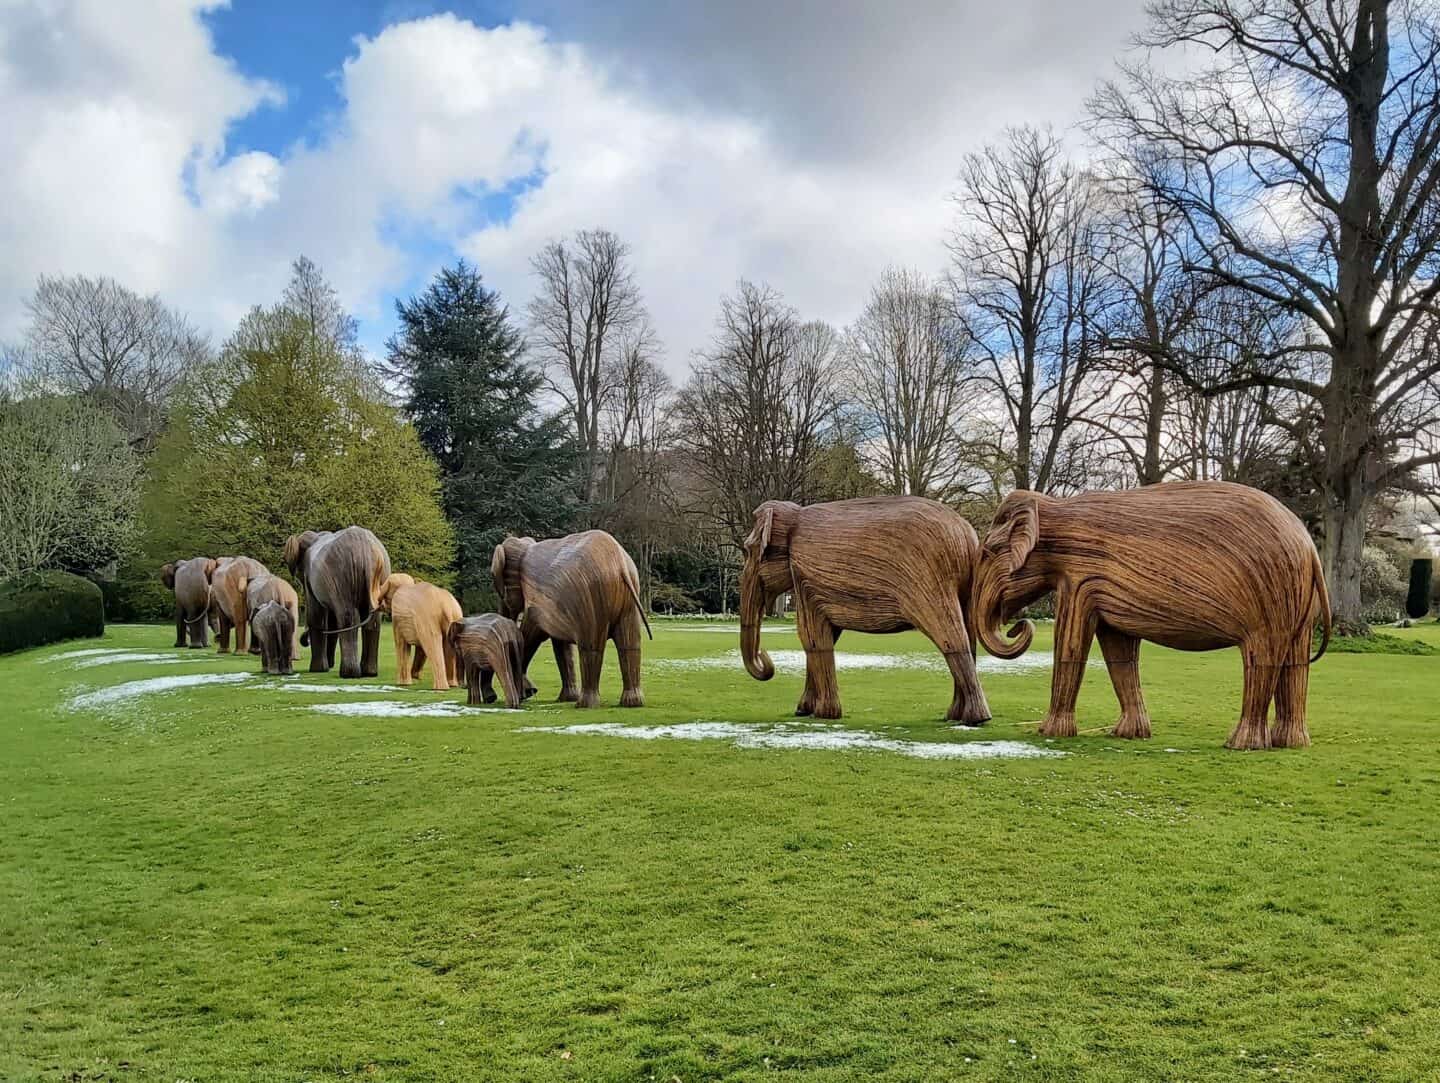 Herd of elephant sculptures walking away